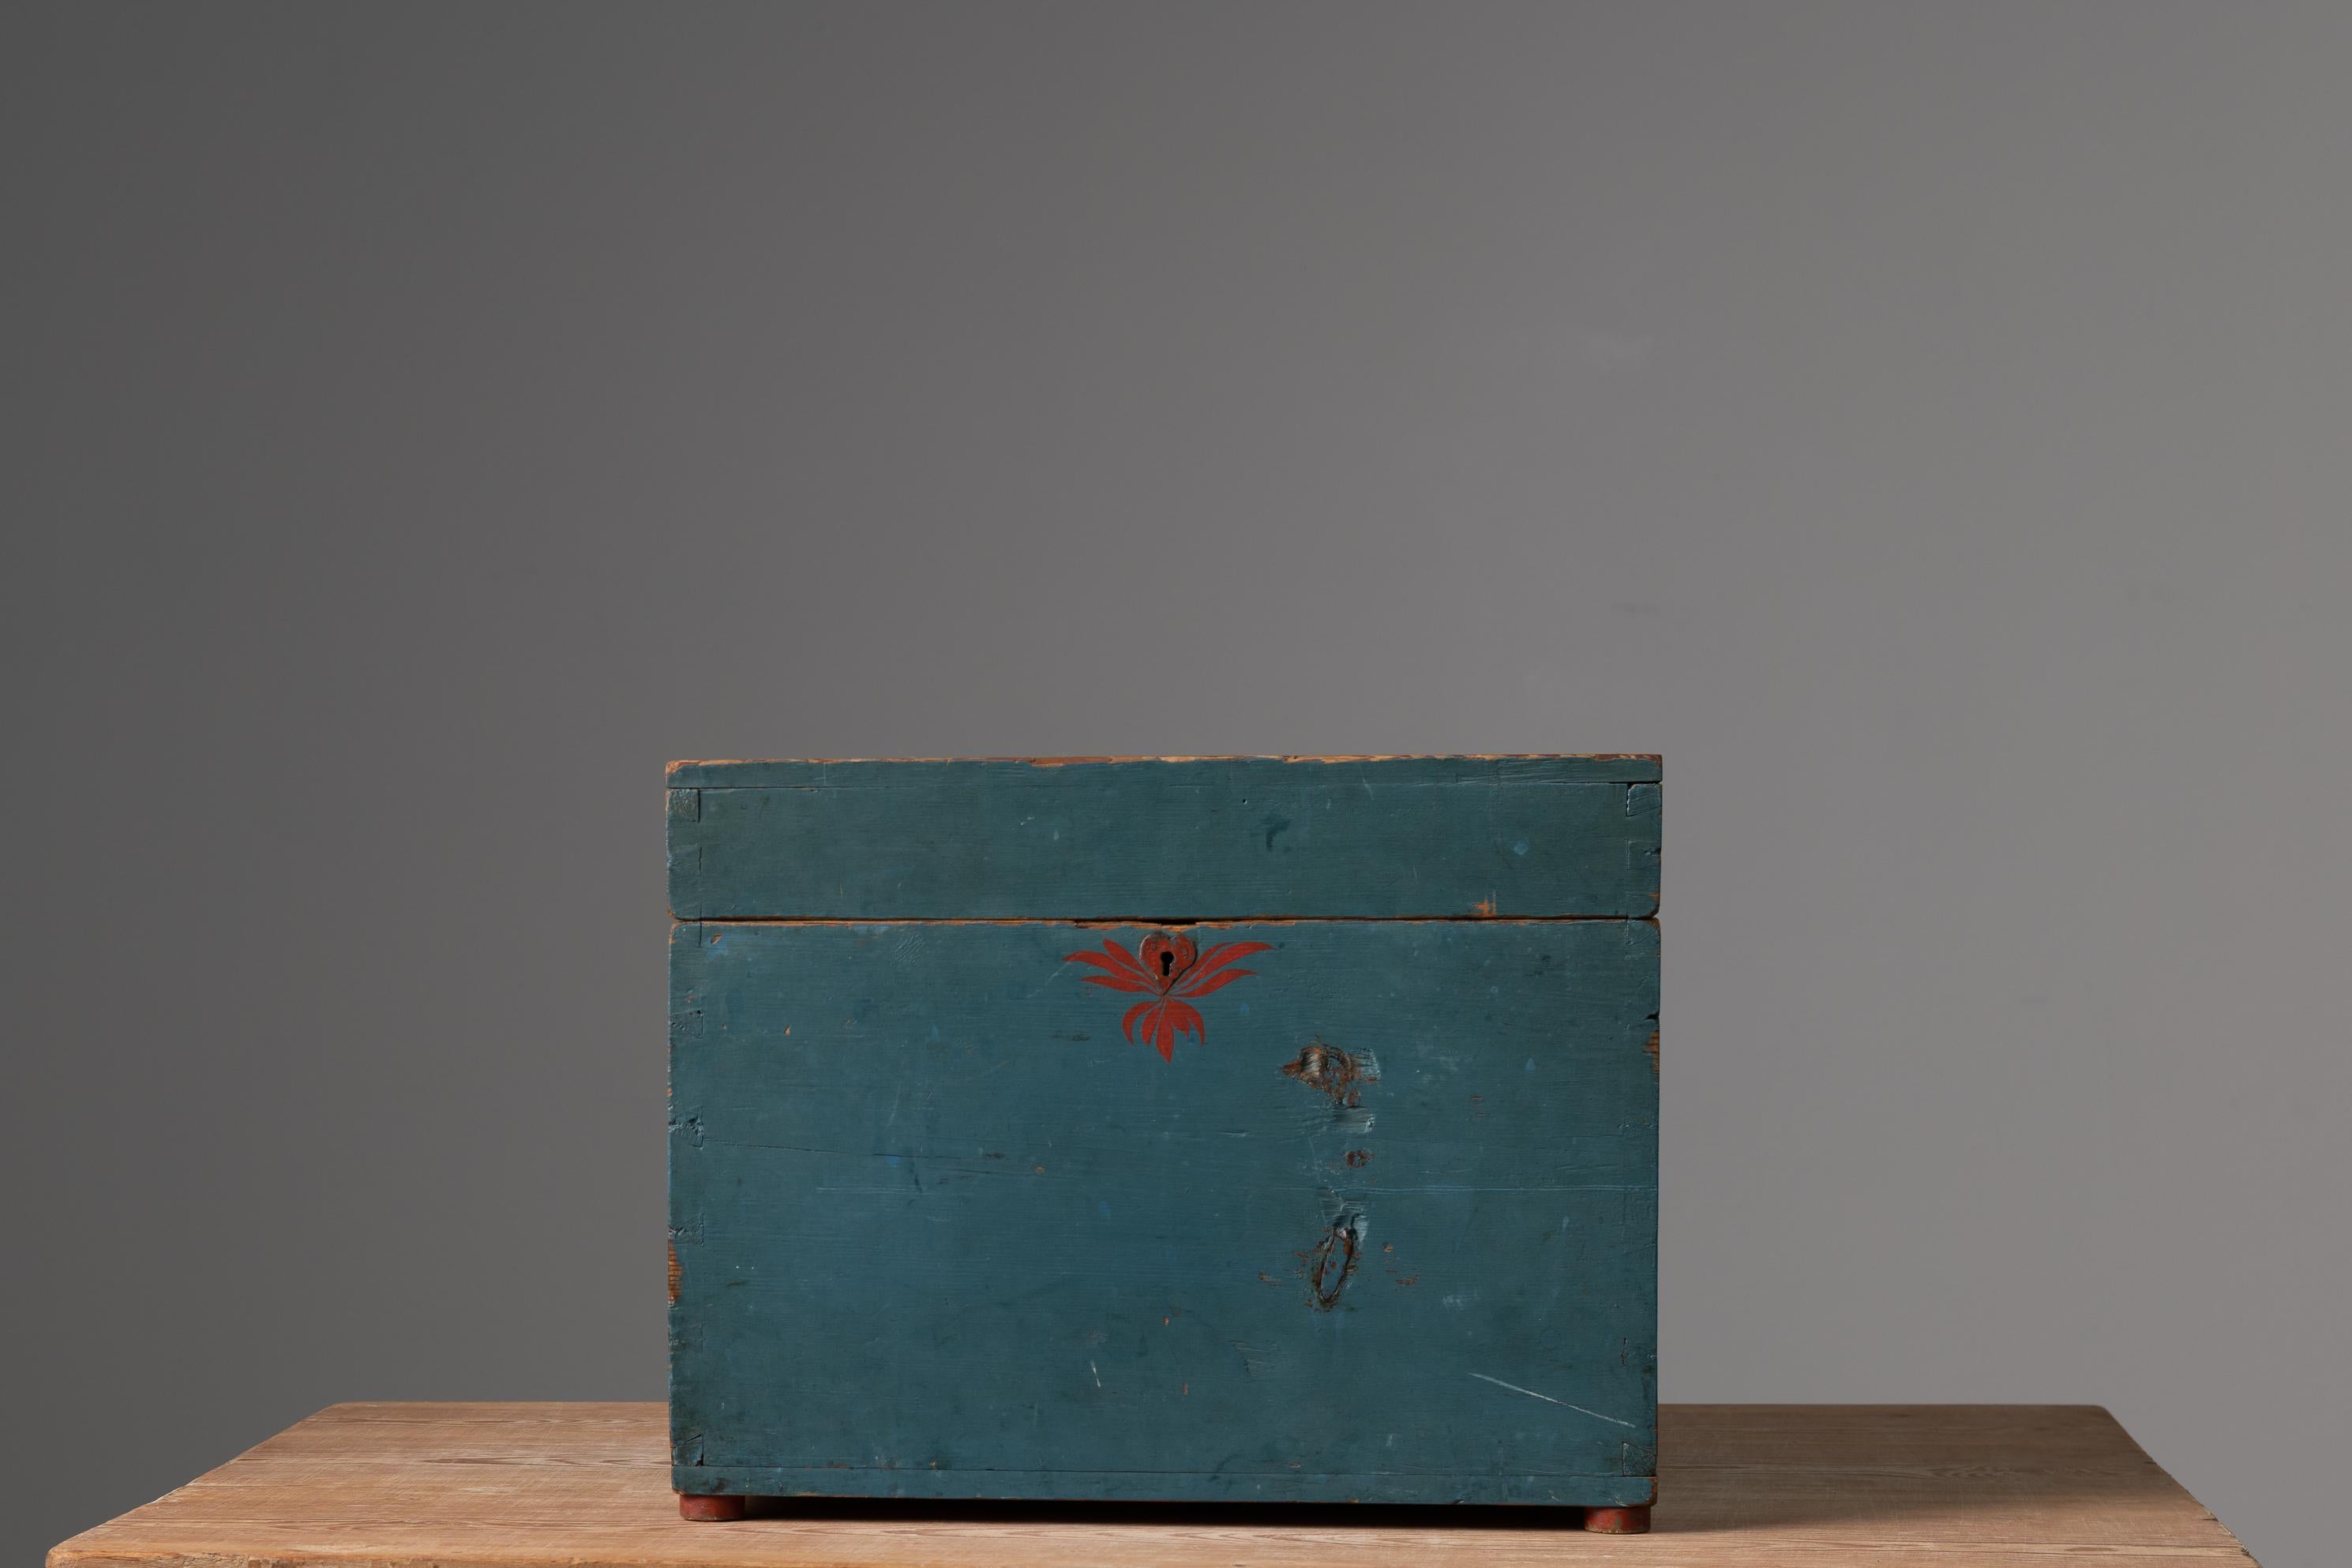 Kasten aus nordschwedischer Blaukiefer aus Hälsingland in Nordschweden. Die Kiste stammt aus dem 19. Jahrhundert und wahrscheinlich aus dem Dorf Norrala. Die Schachtel war wahrscheinlich ein Friargåva, ein Geschenk eines Mannes an die Frau, die er